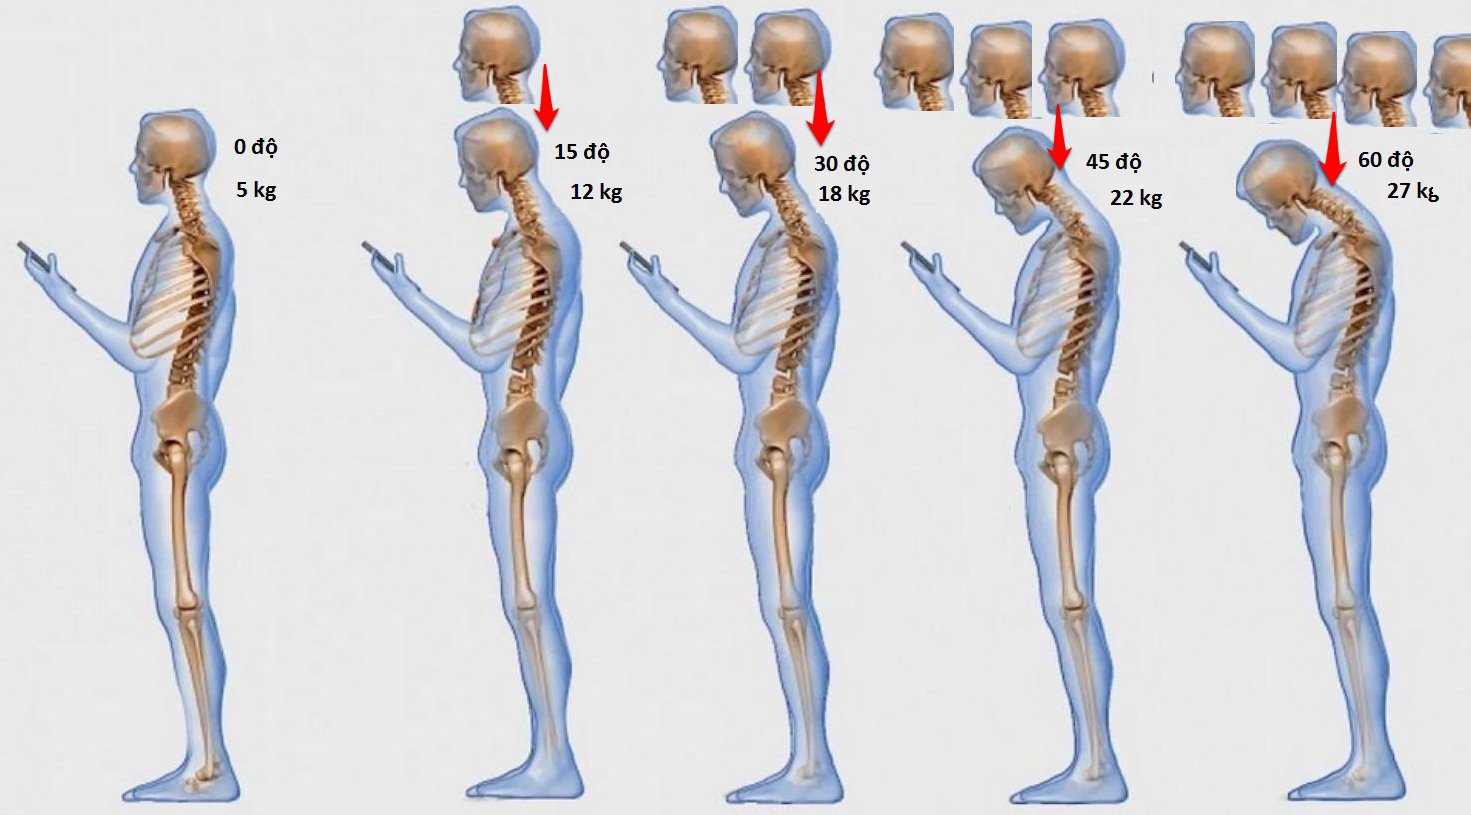 Vì sao điện thoại thông minh lại gây đau xương khớp?